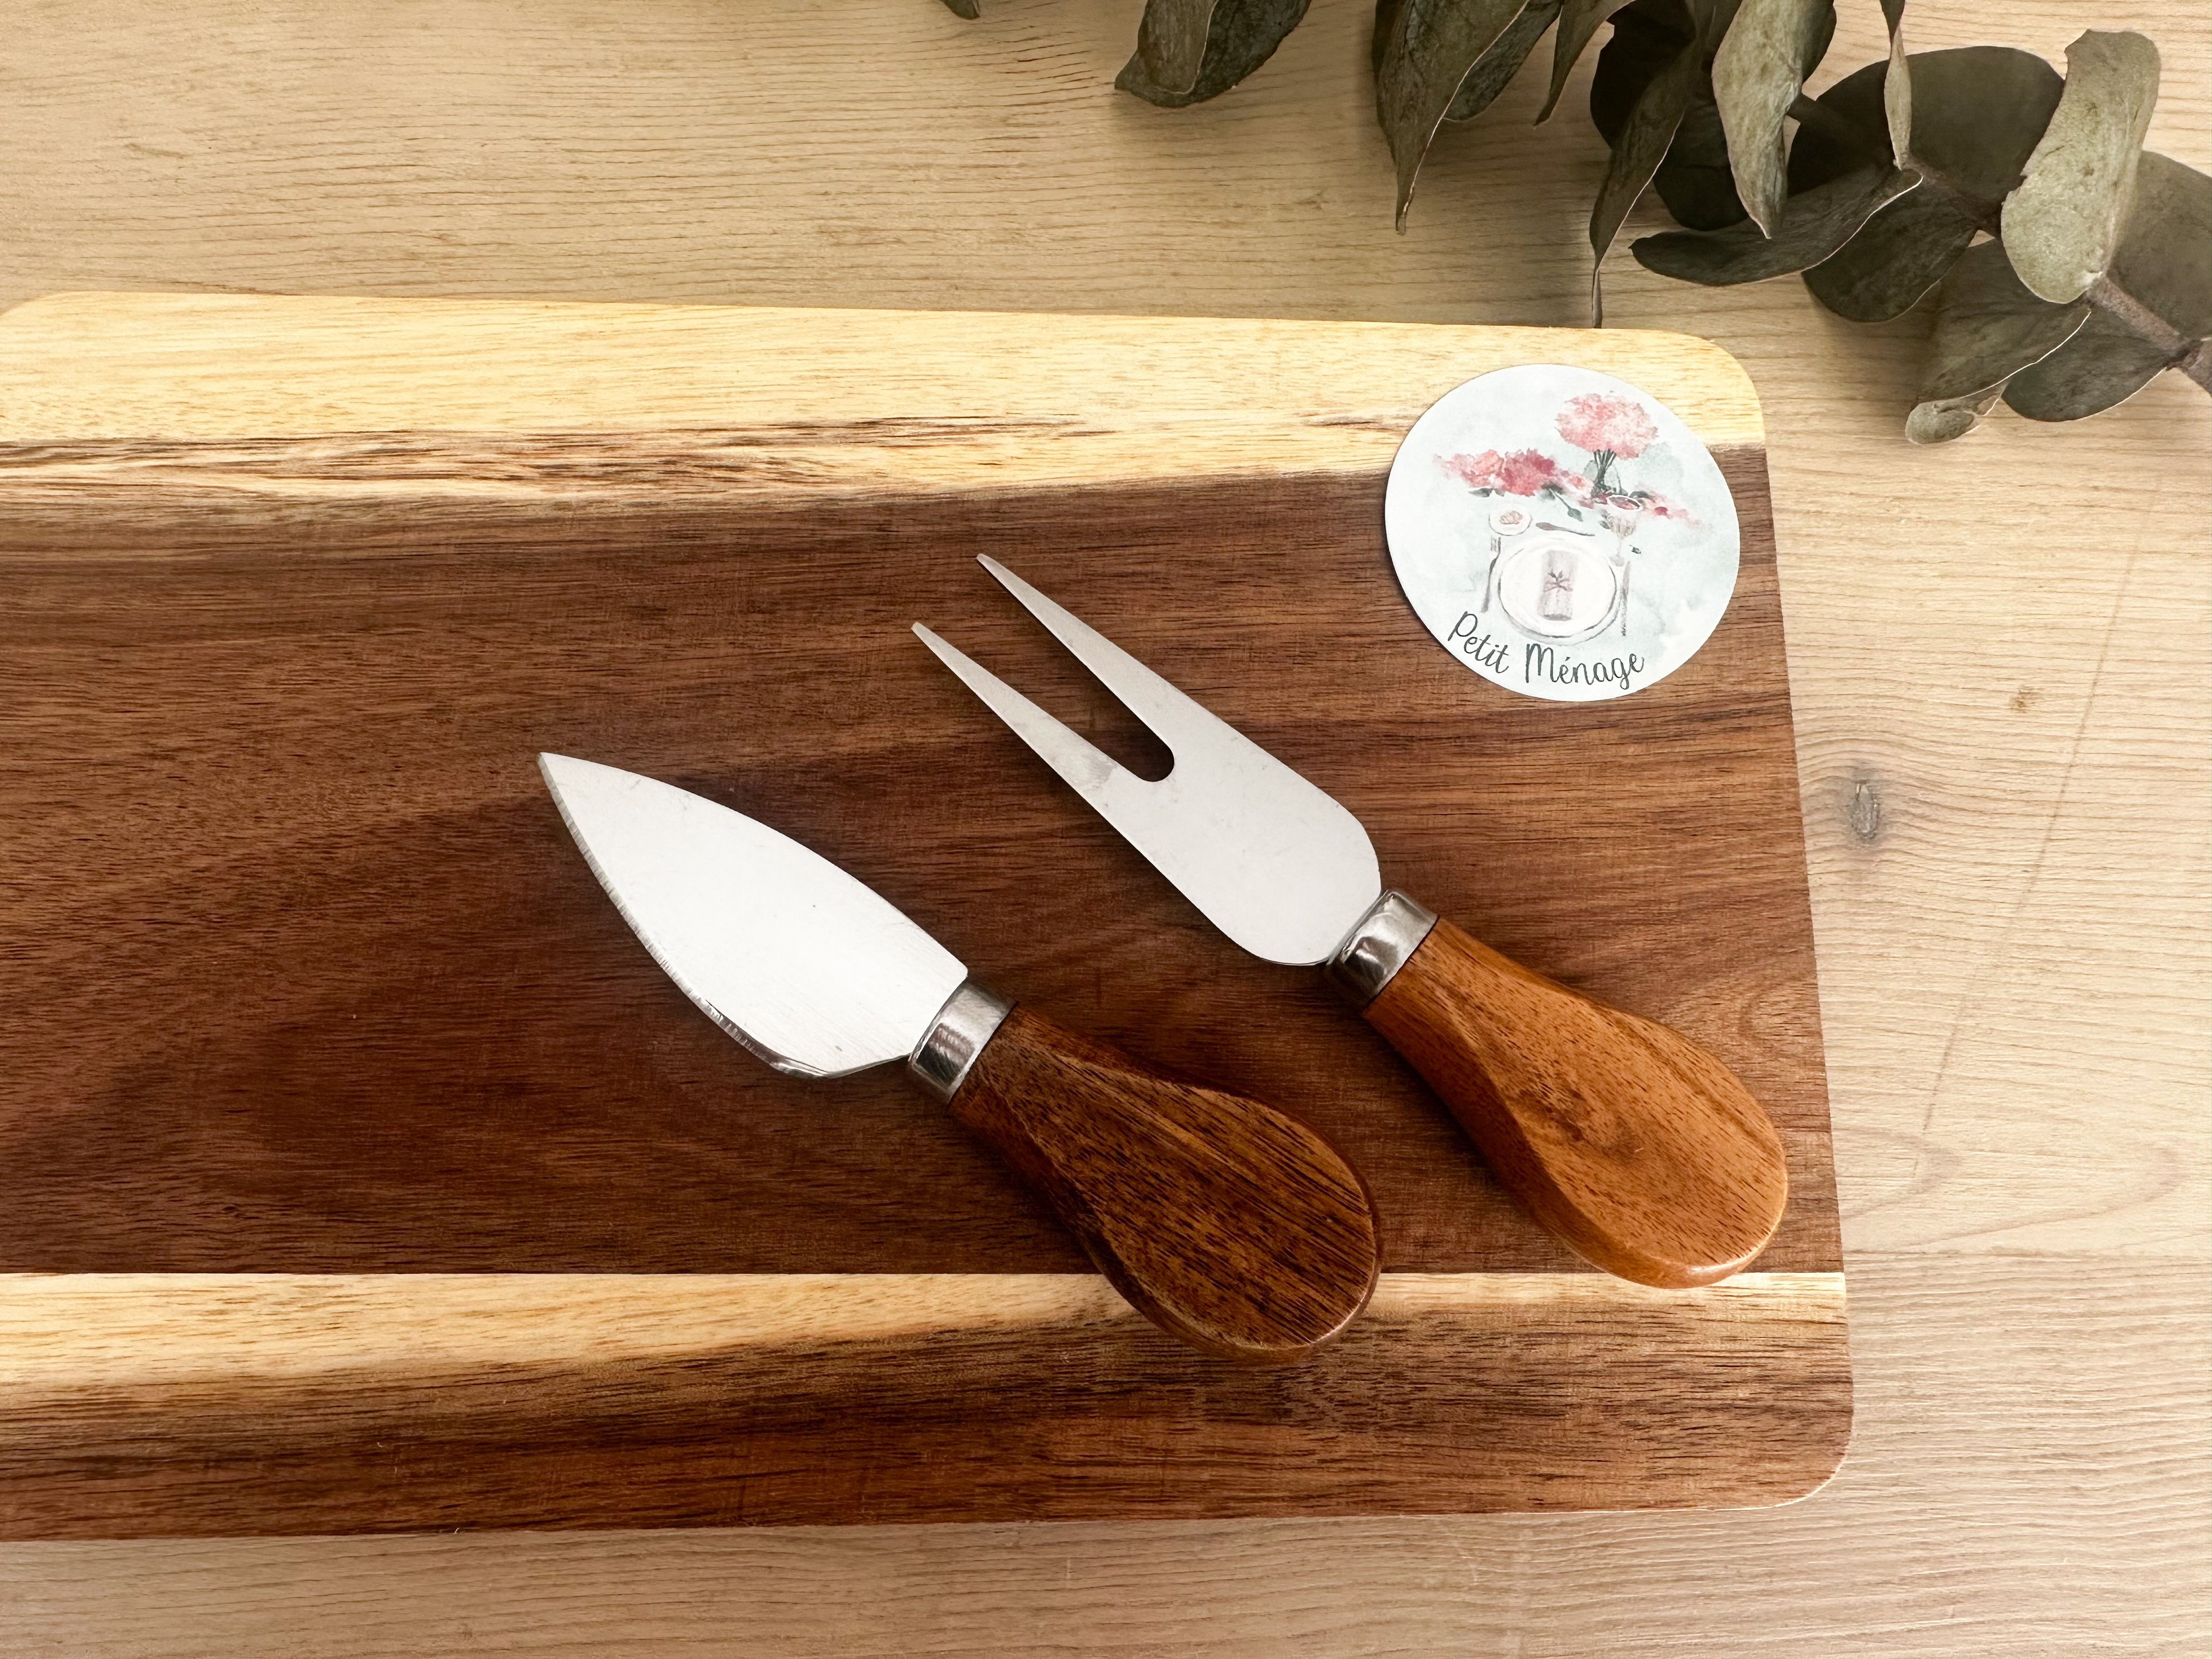 CHEESE: tablita con set de cuchillos